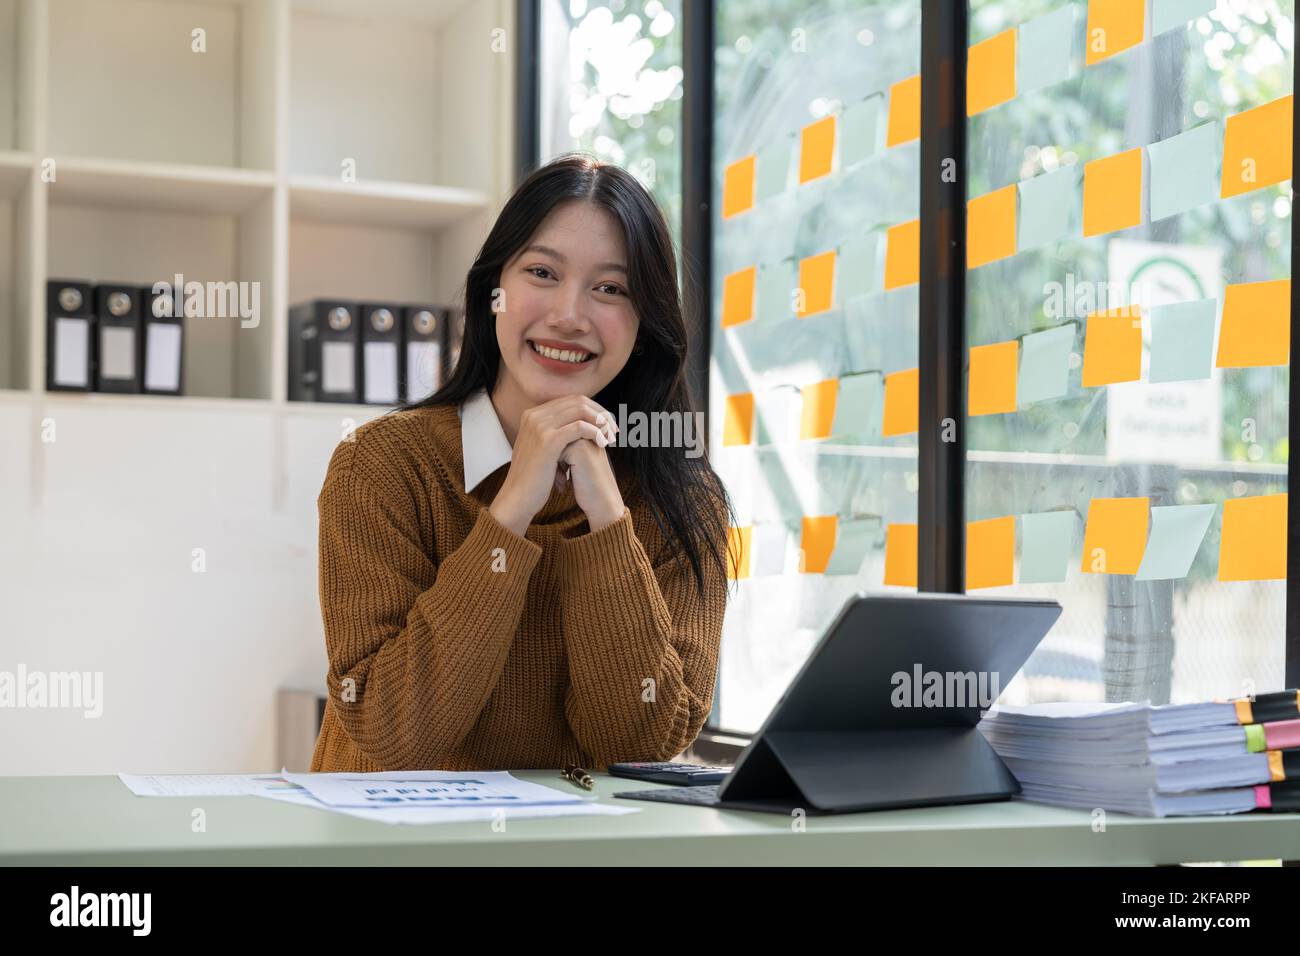 Porträt einer jungen, schönen asiatischen Geschäftsfrau, die am Laptop sitzt und lächelt und die Kamera anschaut Stockfoto